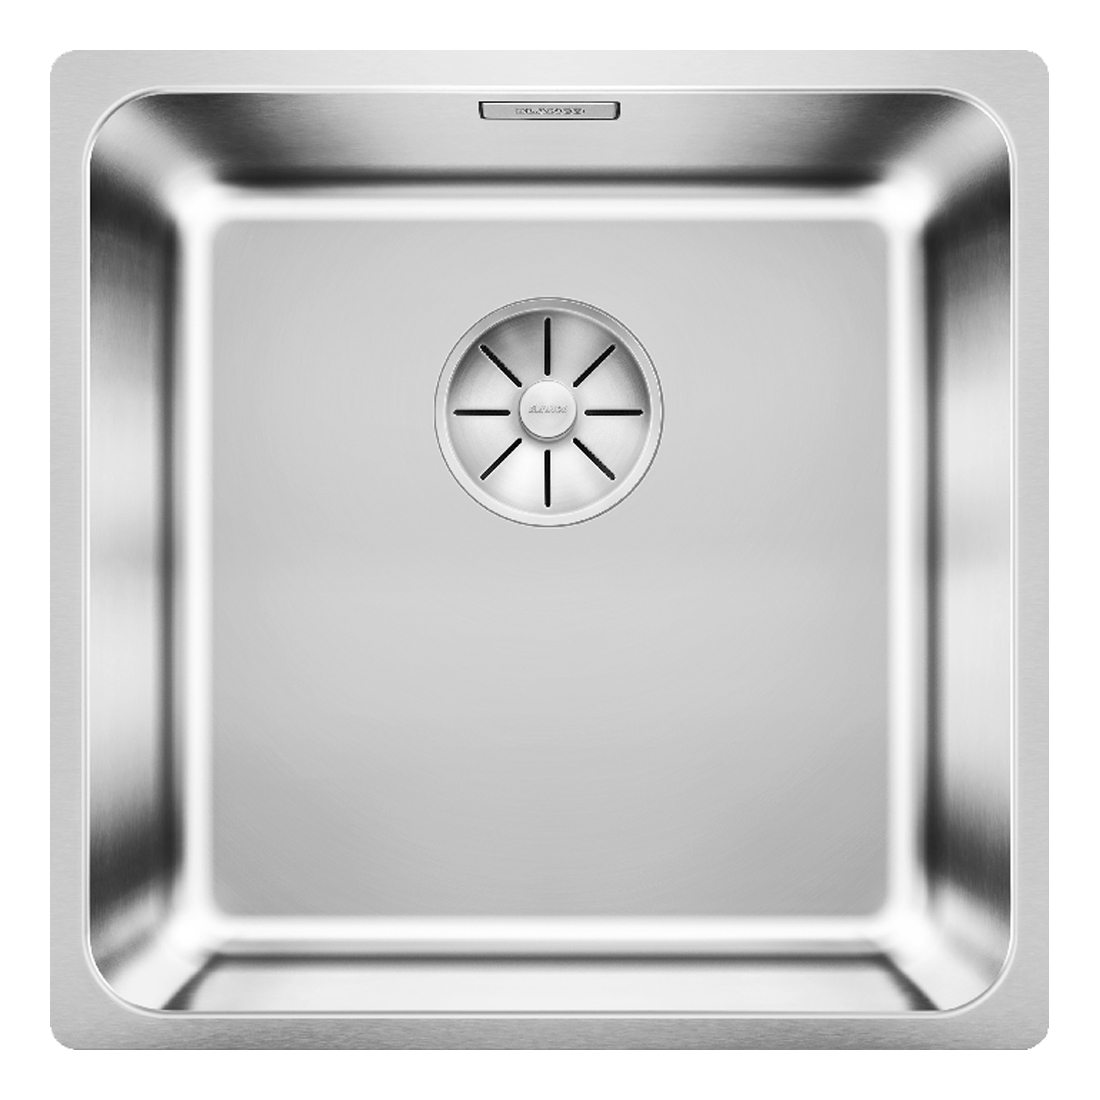 Кухонная мойка Blanco Solis 400-IF полированная сталь кухонная мойка blanco solis 500 u полированная сталь